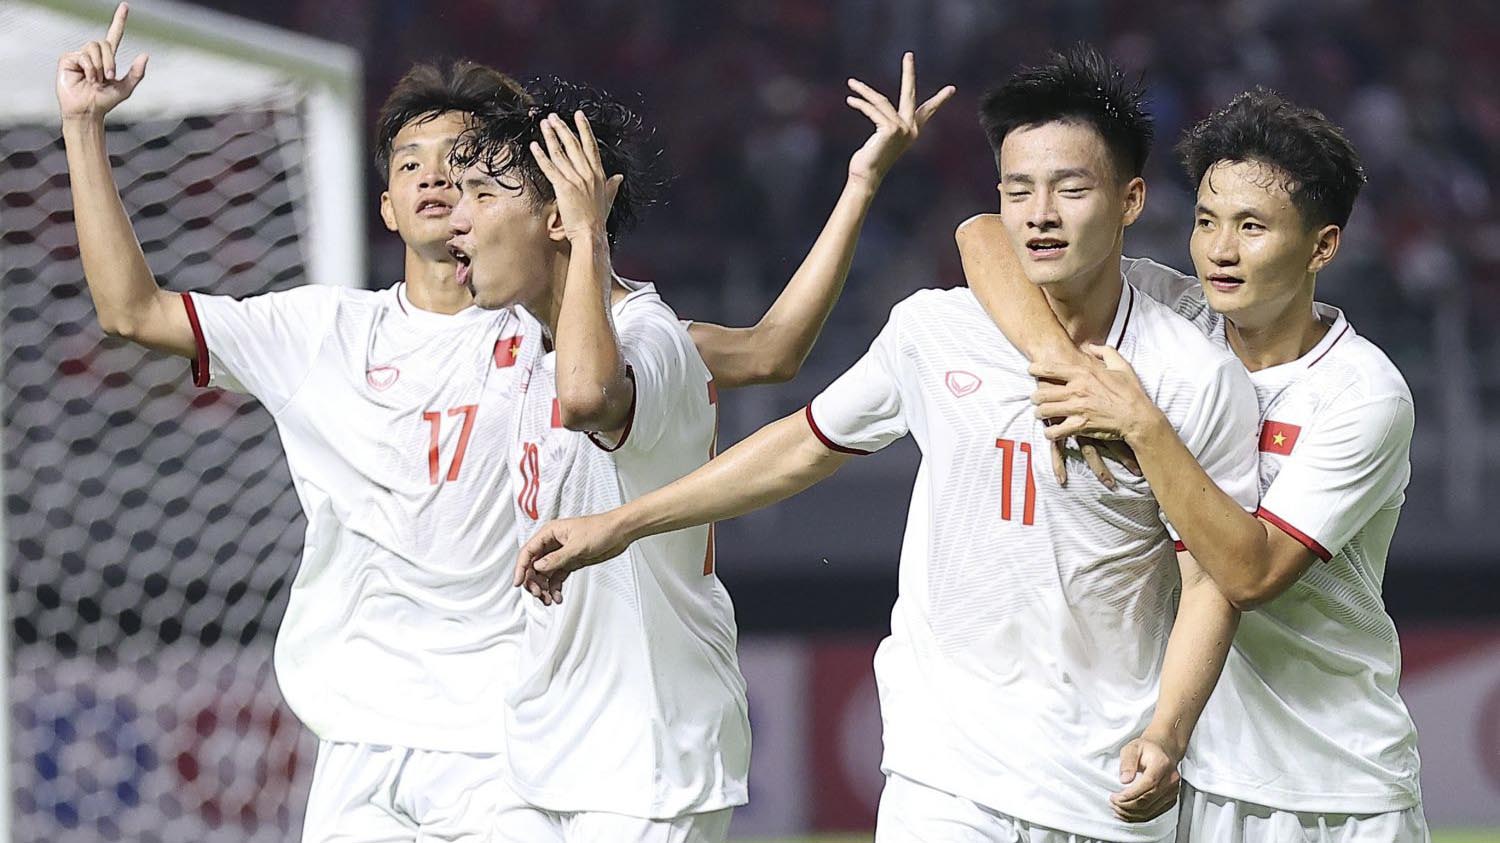 U20 Việt Nam vẫn đoạt vé dự VCK U20 châu Á dù thua Indonesia